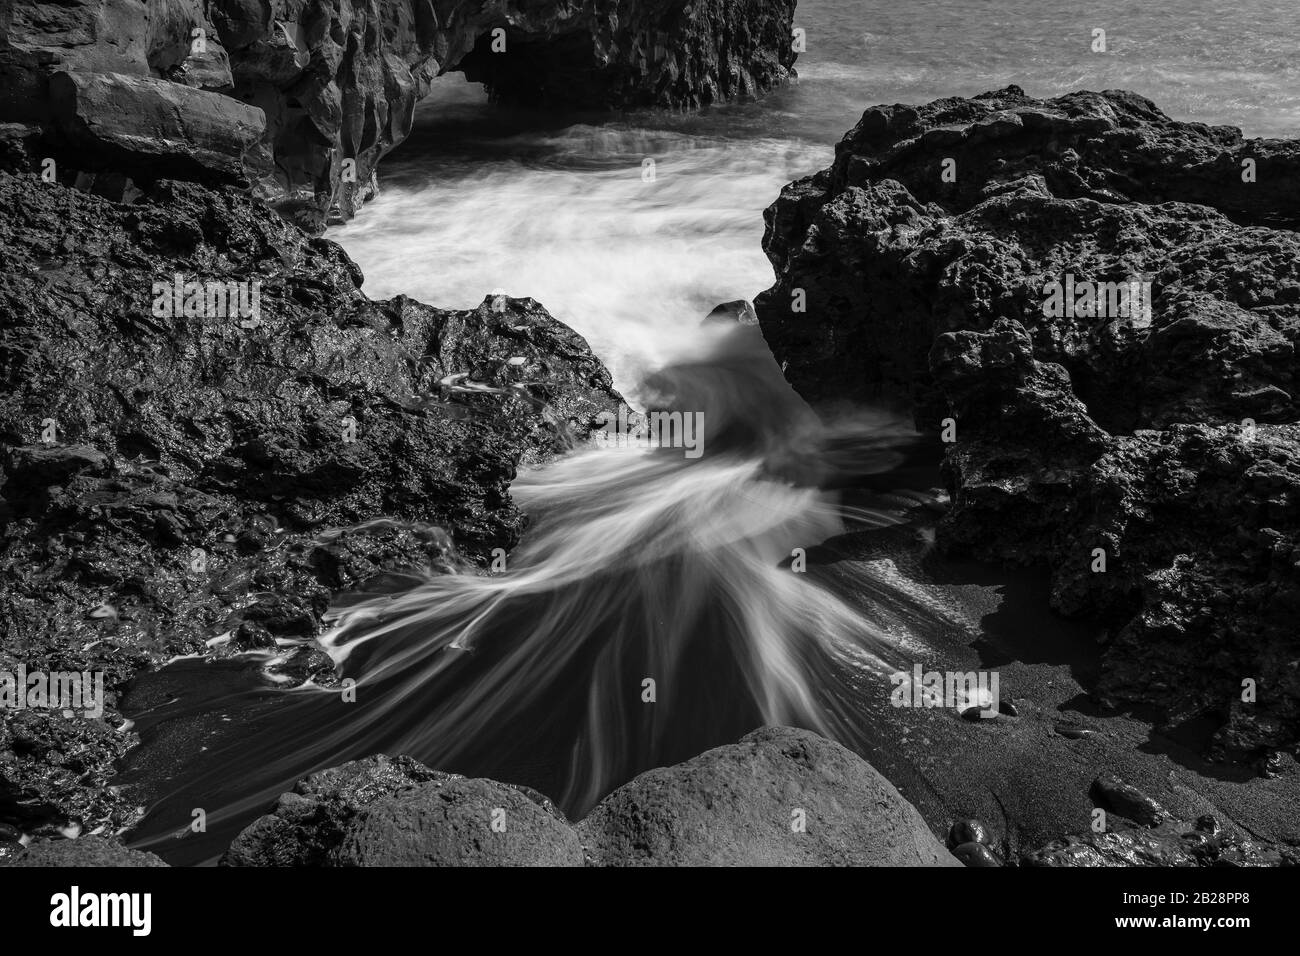 El agua se lava alrededor de piedras, arena de lava negra, playa, blanco y negro, la Palma, Islas Canarias, Islas Canarias, España Foto de stock